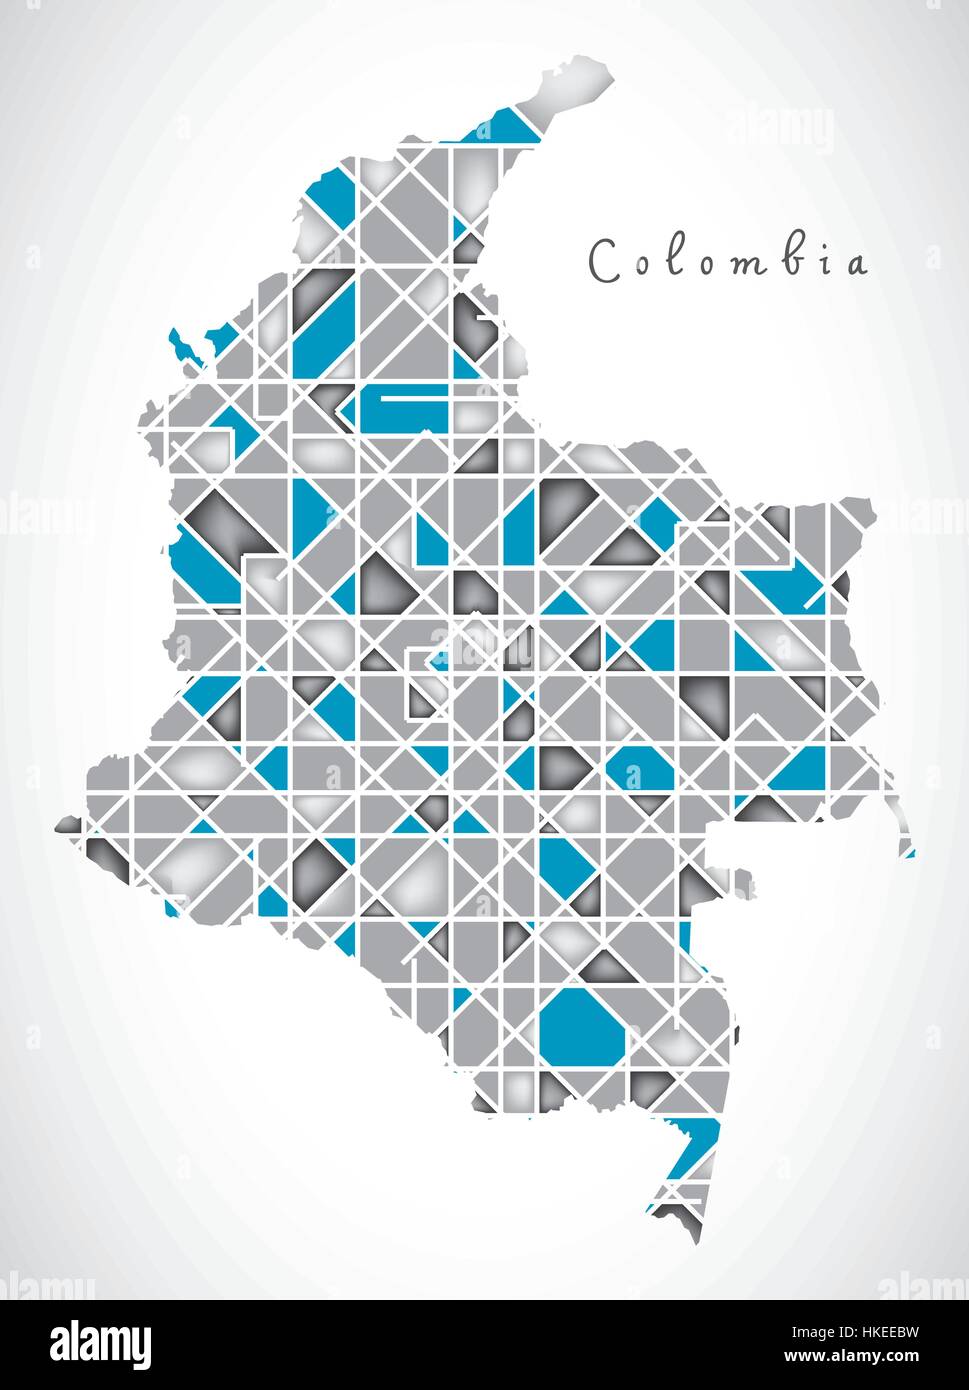 Colombie Map illustration illustrations style Diamant Illustration de Vecteur